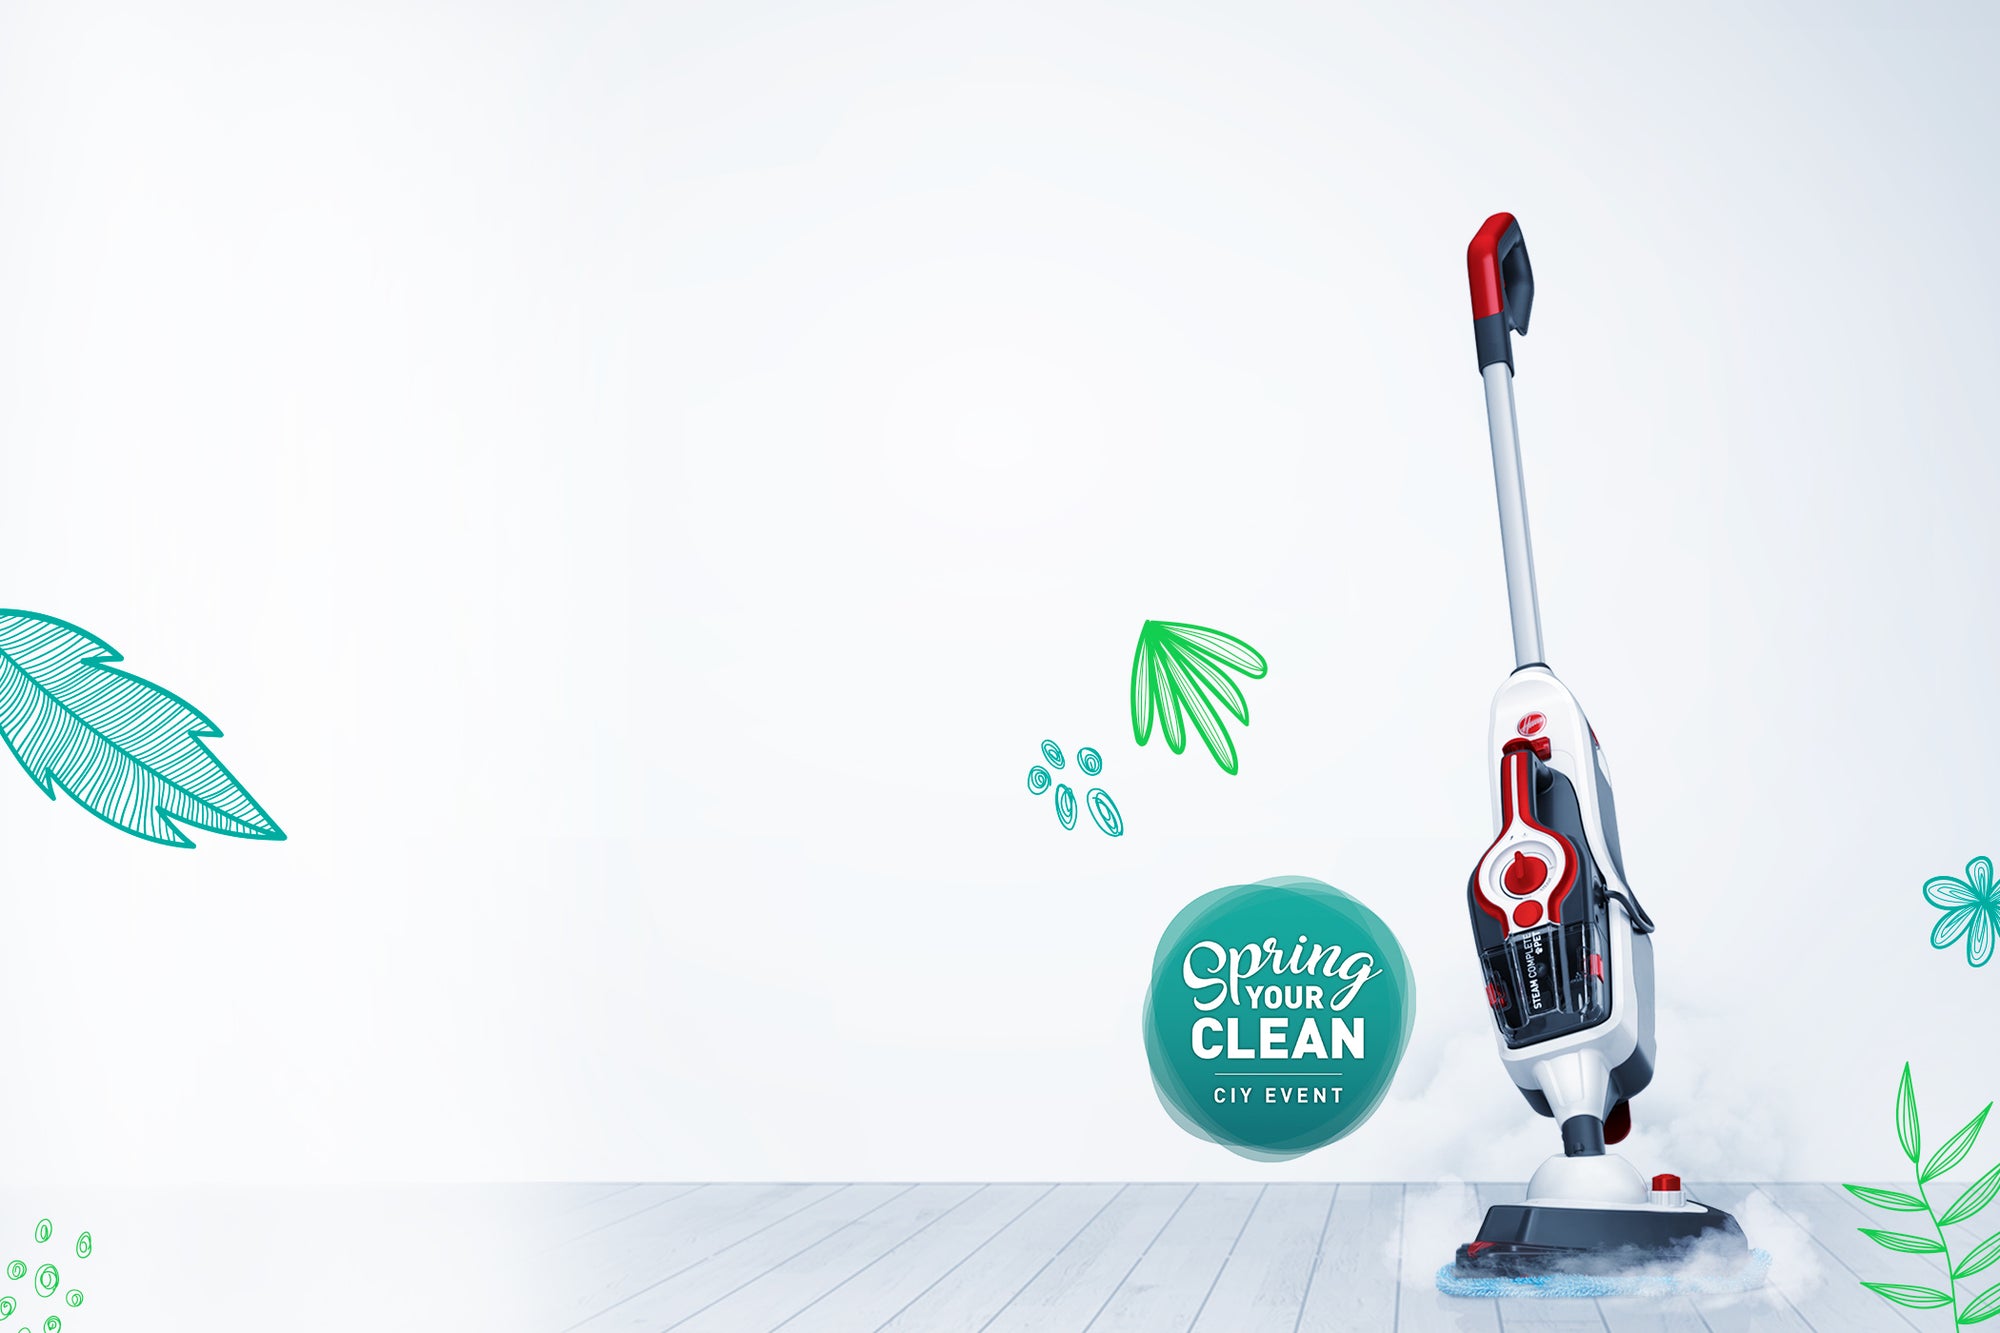 Máy hút bụi Hoover là sự lựa chọn tuyệt vời cho căn nhà của bạn với khả năng hút sạch bụi, tóc và rác thải chỉ trong vài phút. Được trang bị công nghệ hiện đại và thiết kế đẹp mắt, chiếc máy này sẽ làm cho việc làm sạch nhà của bạn trở nên dễ dàng và thoải mái hơn bao giờ hết.